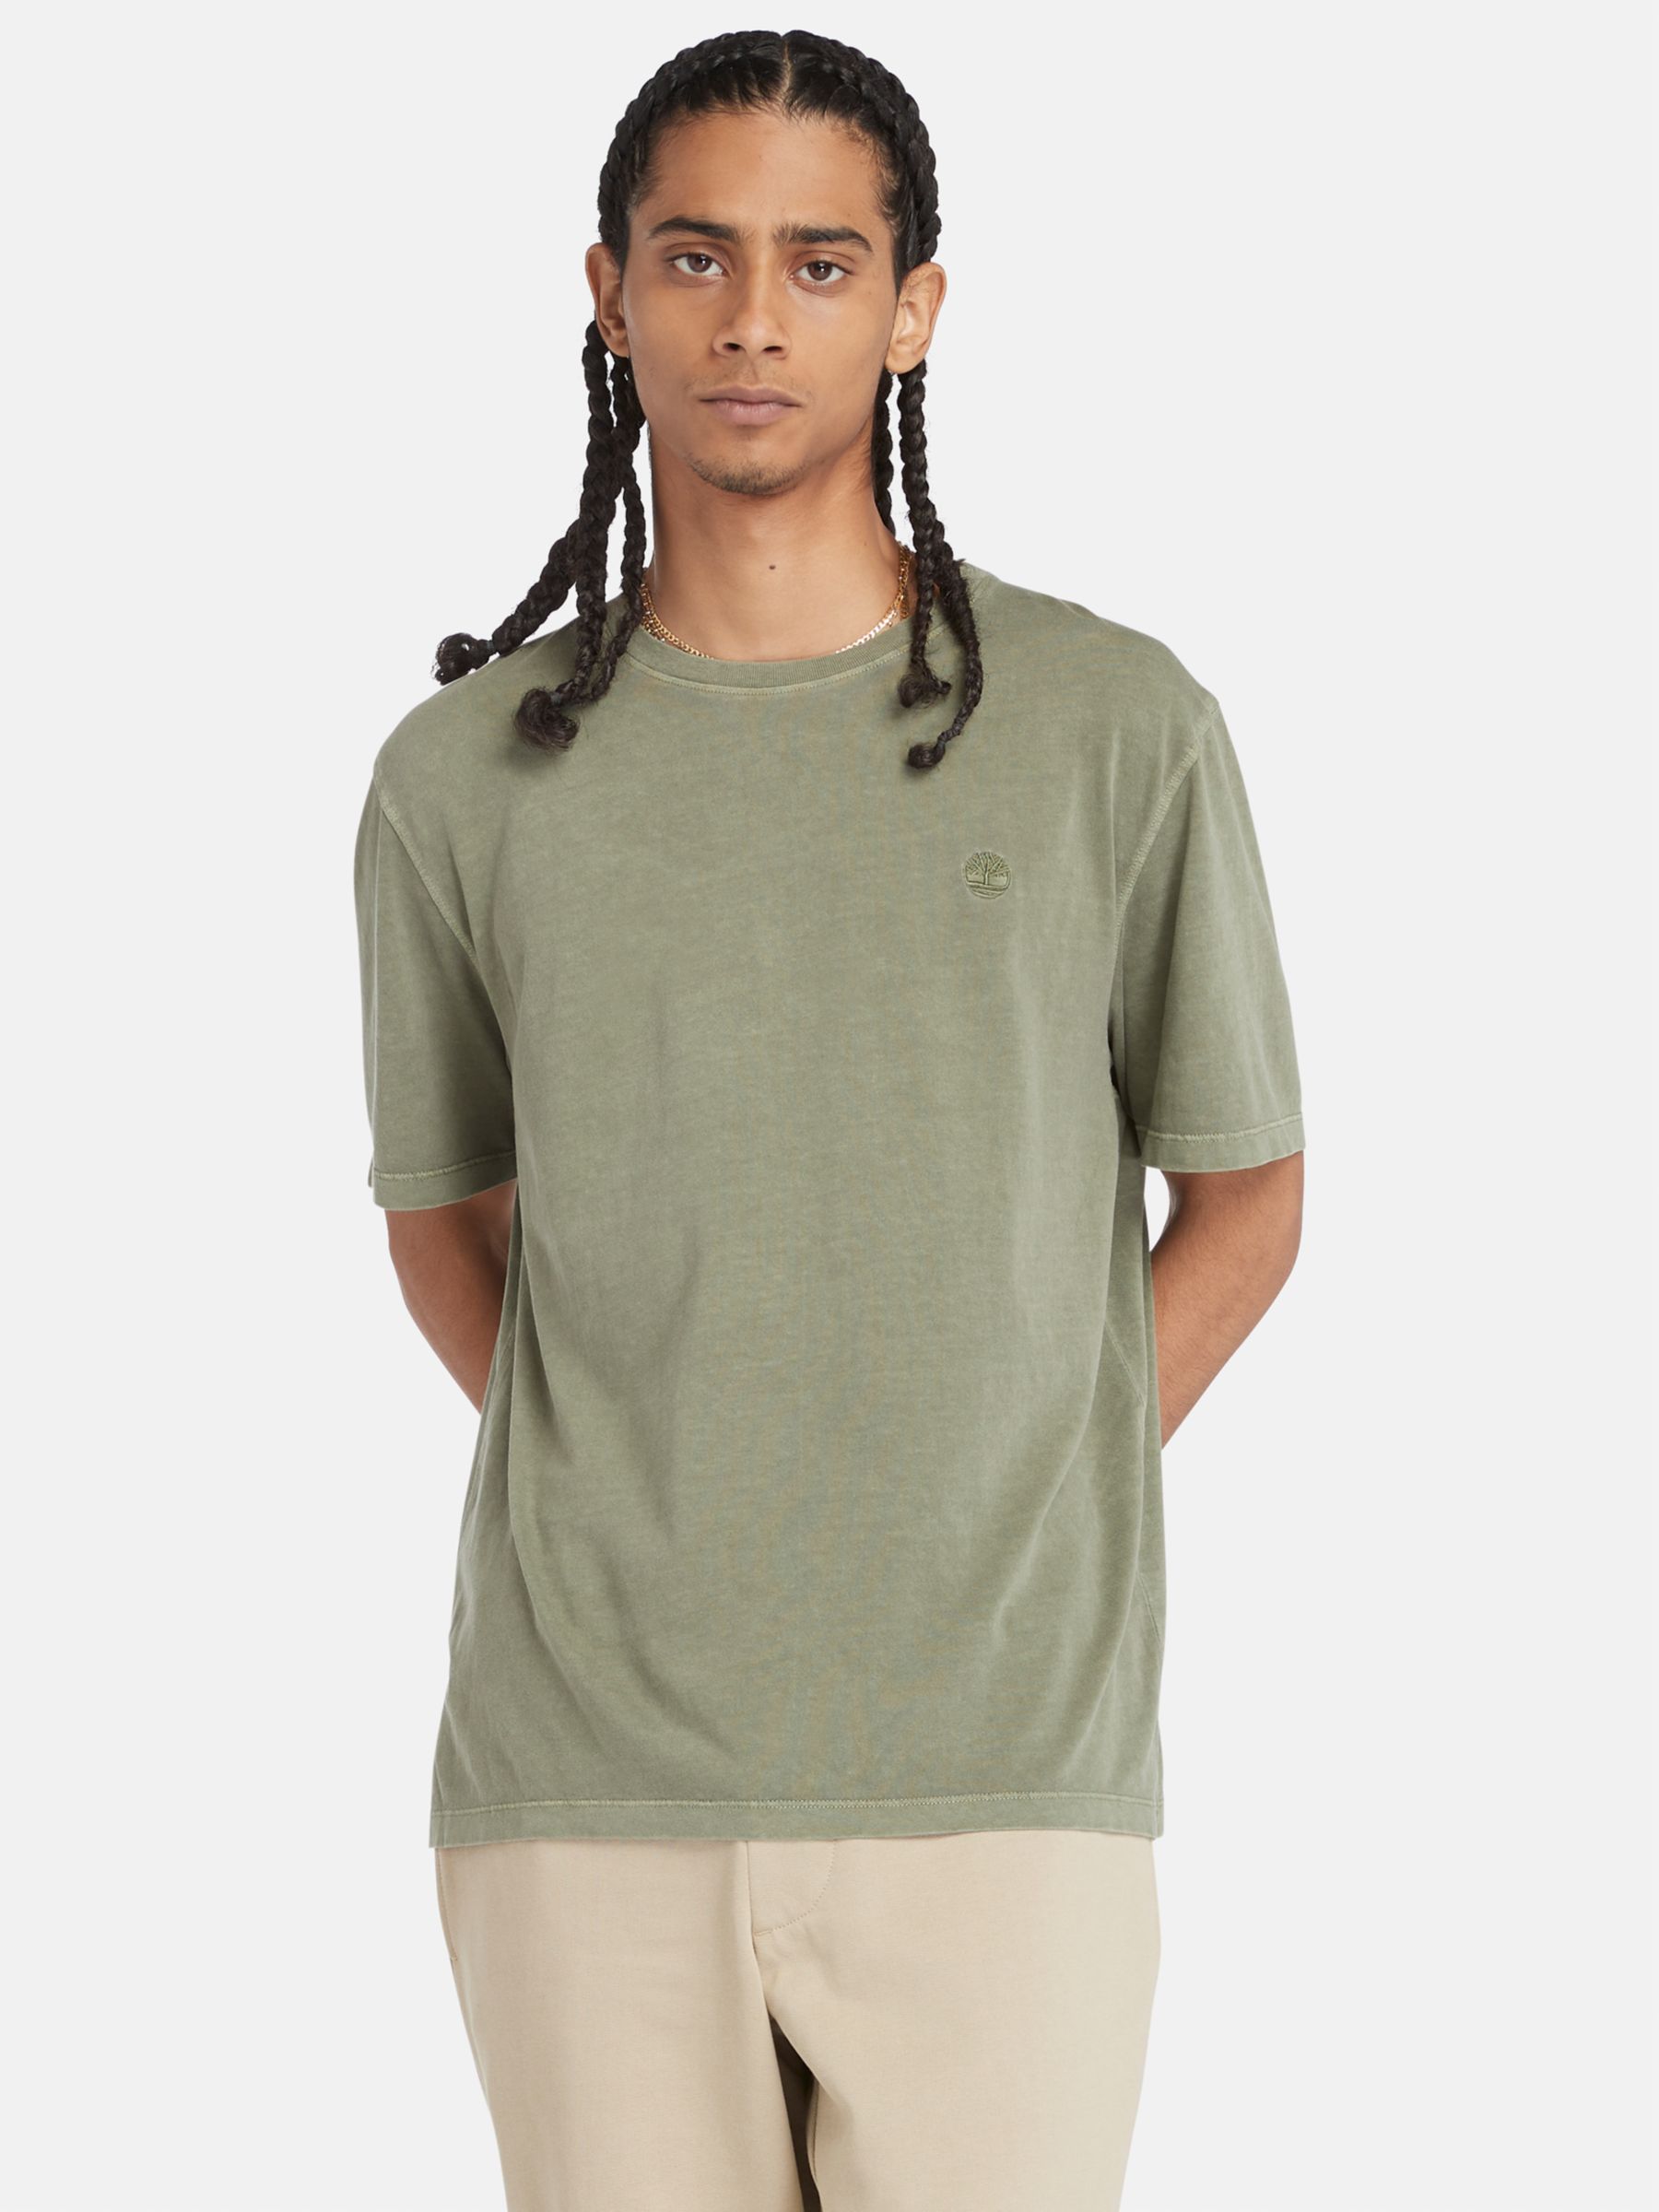 Timberland Dye Short Sleeve T-Shirt, Cassel Earth, S